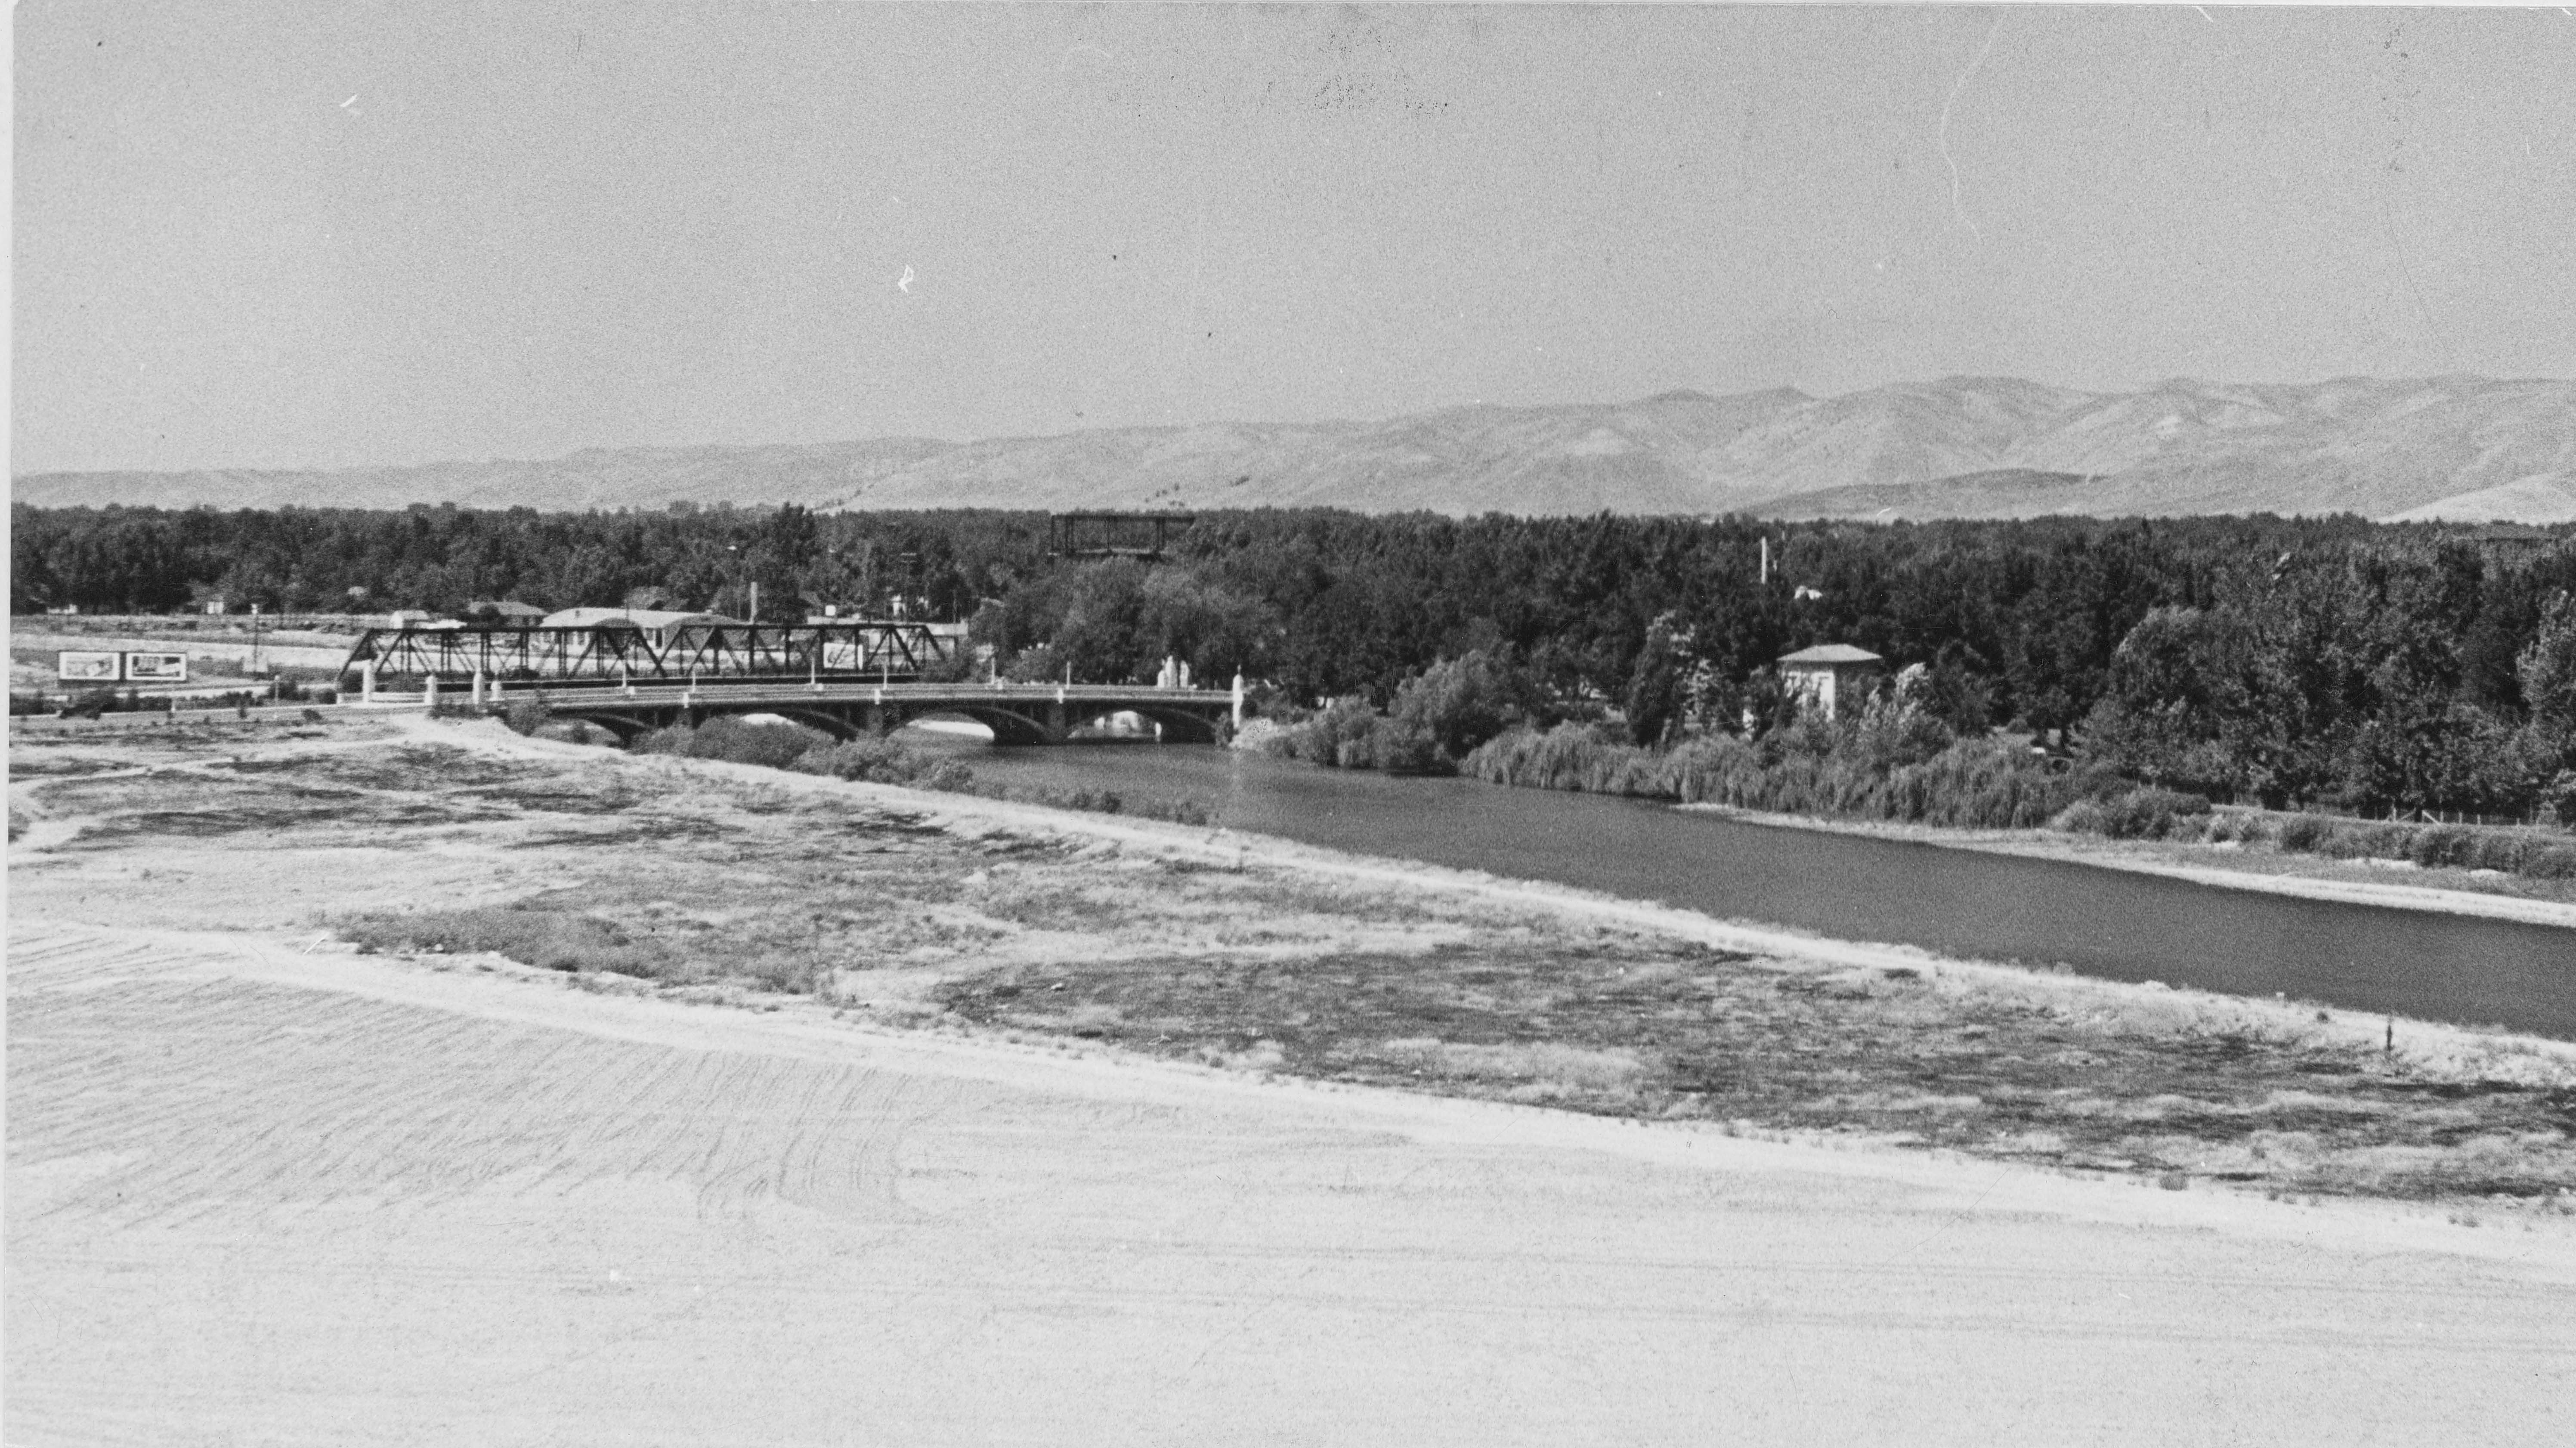 Campus scene, 1940s